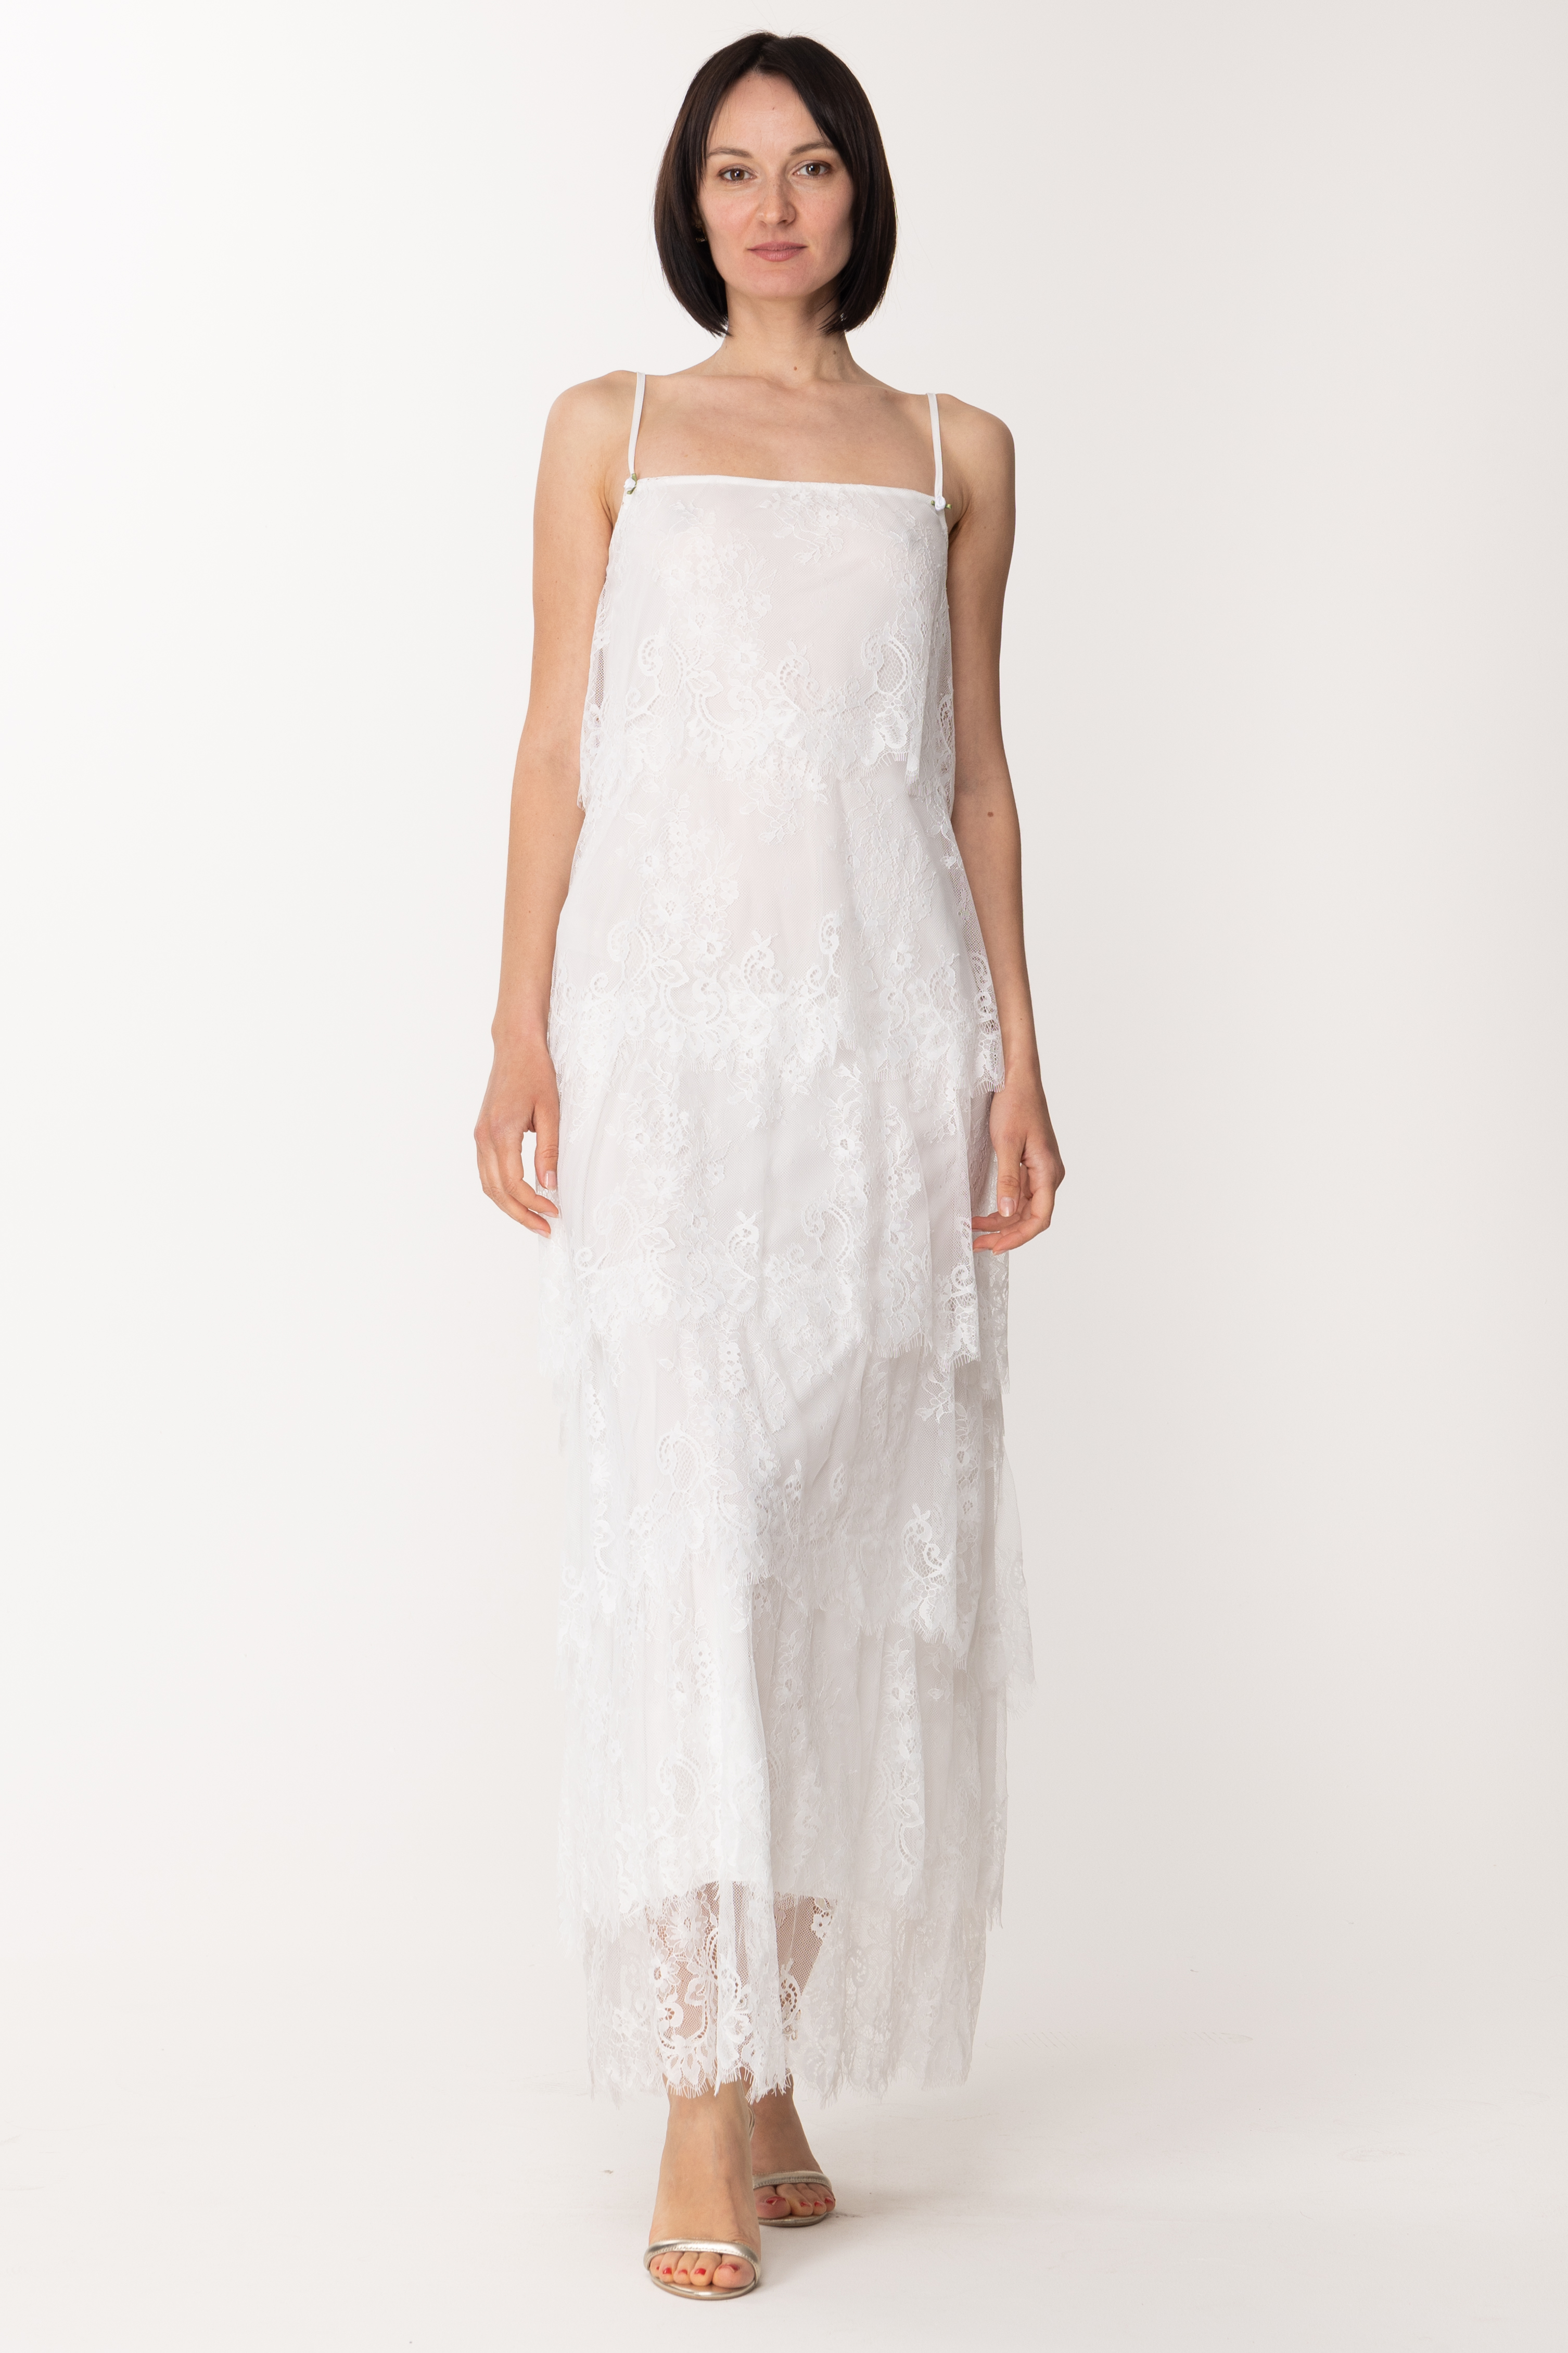 Vorschau: Aniye By Langes Gil-Kleid mit Spitzenvolants WHITE